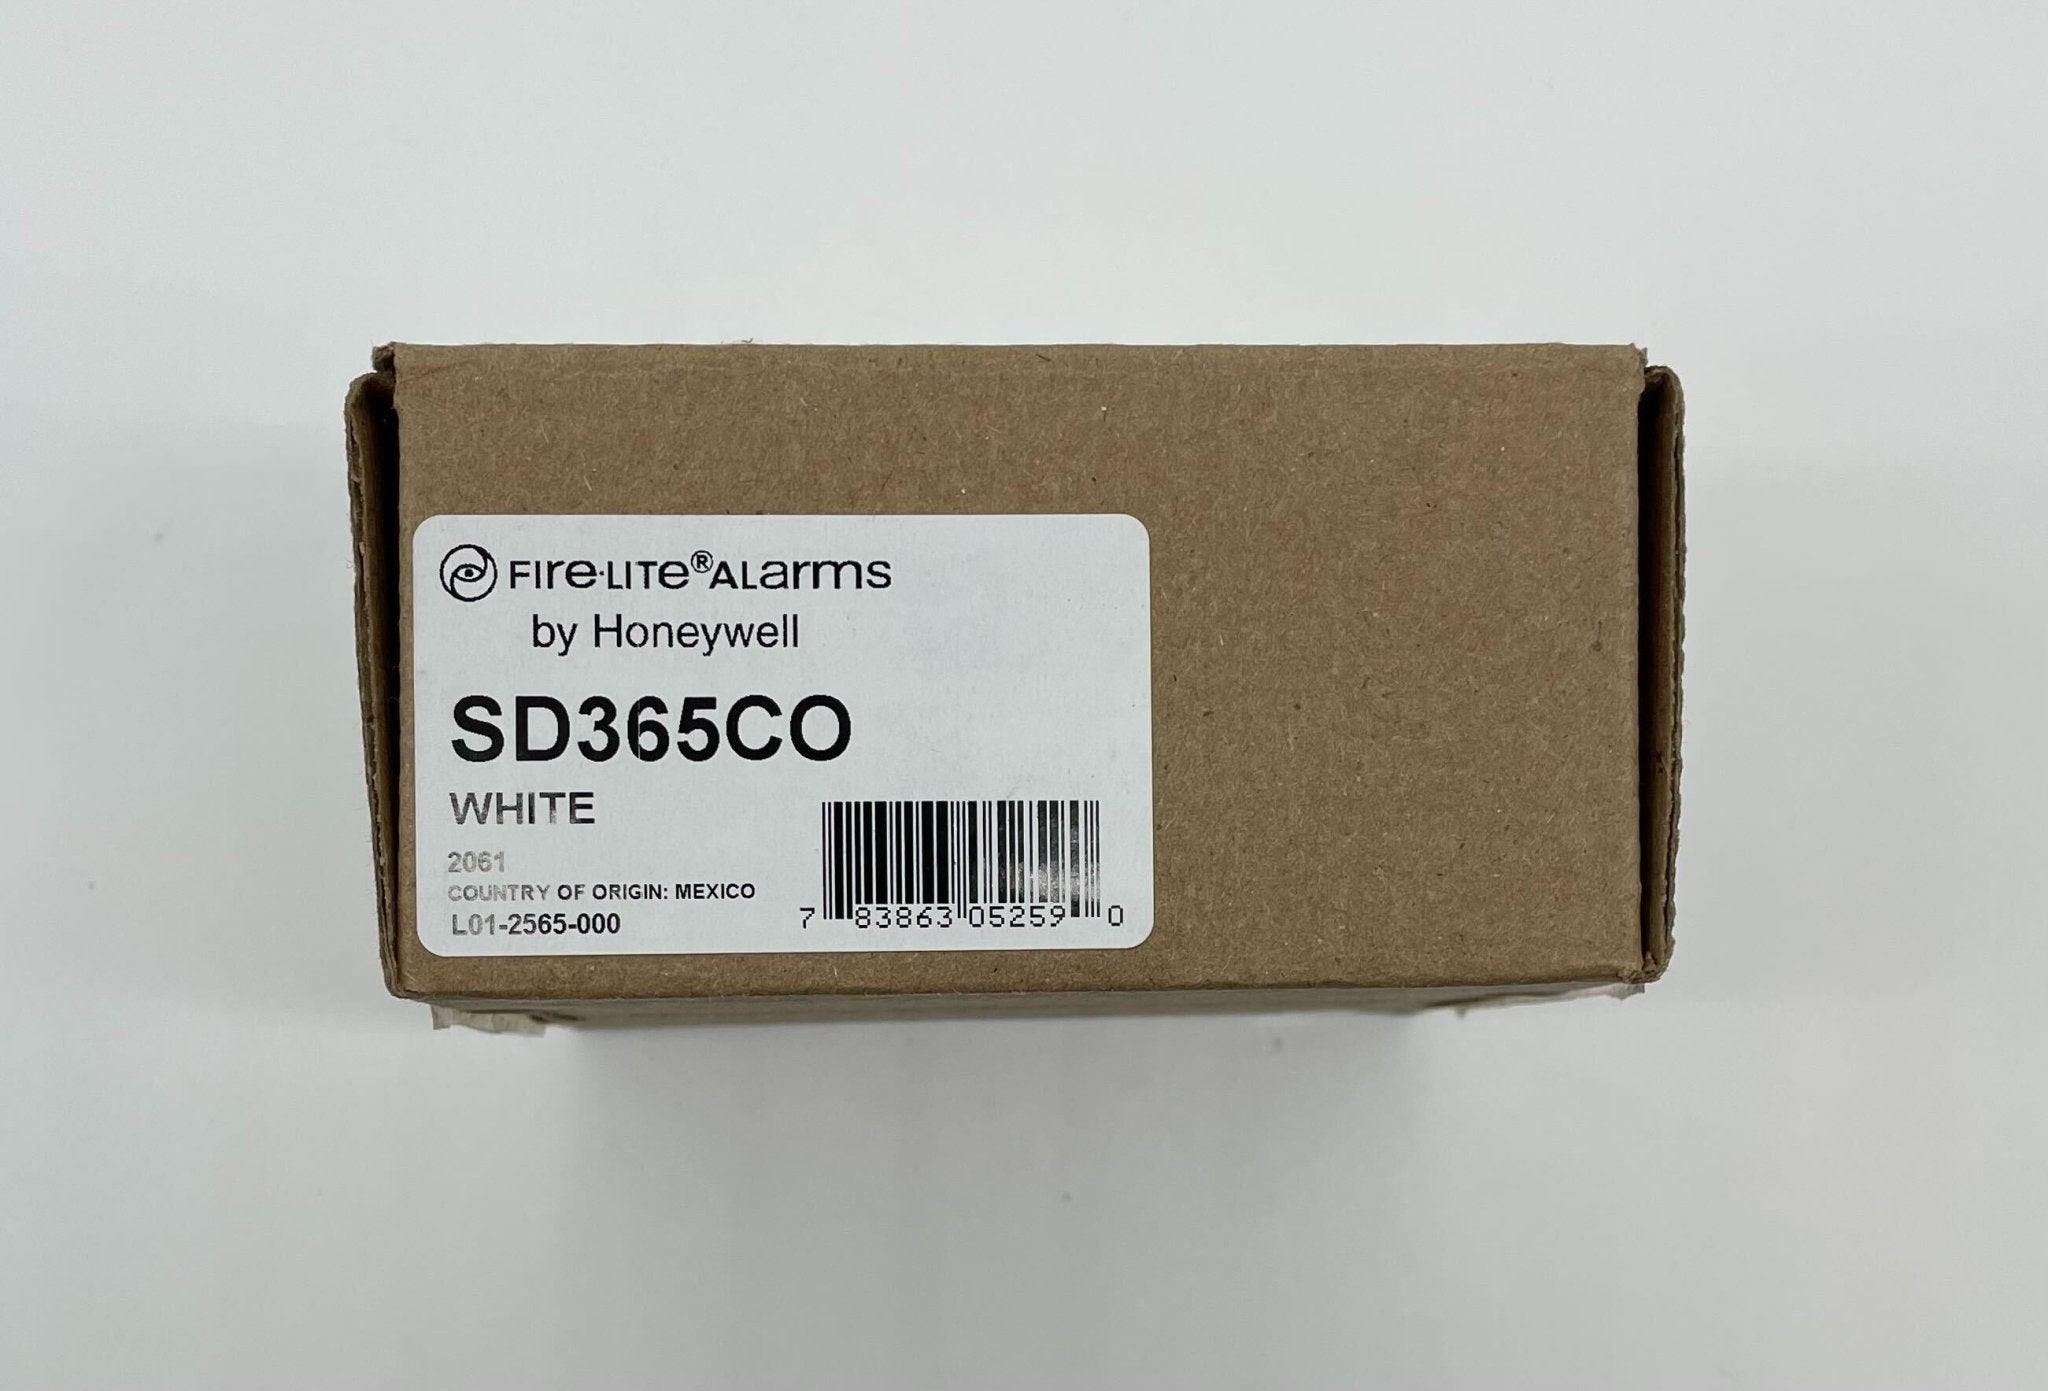 Firelite SD365CO - The Fire Alarm Supplier